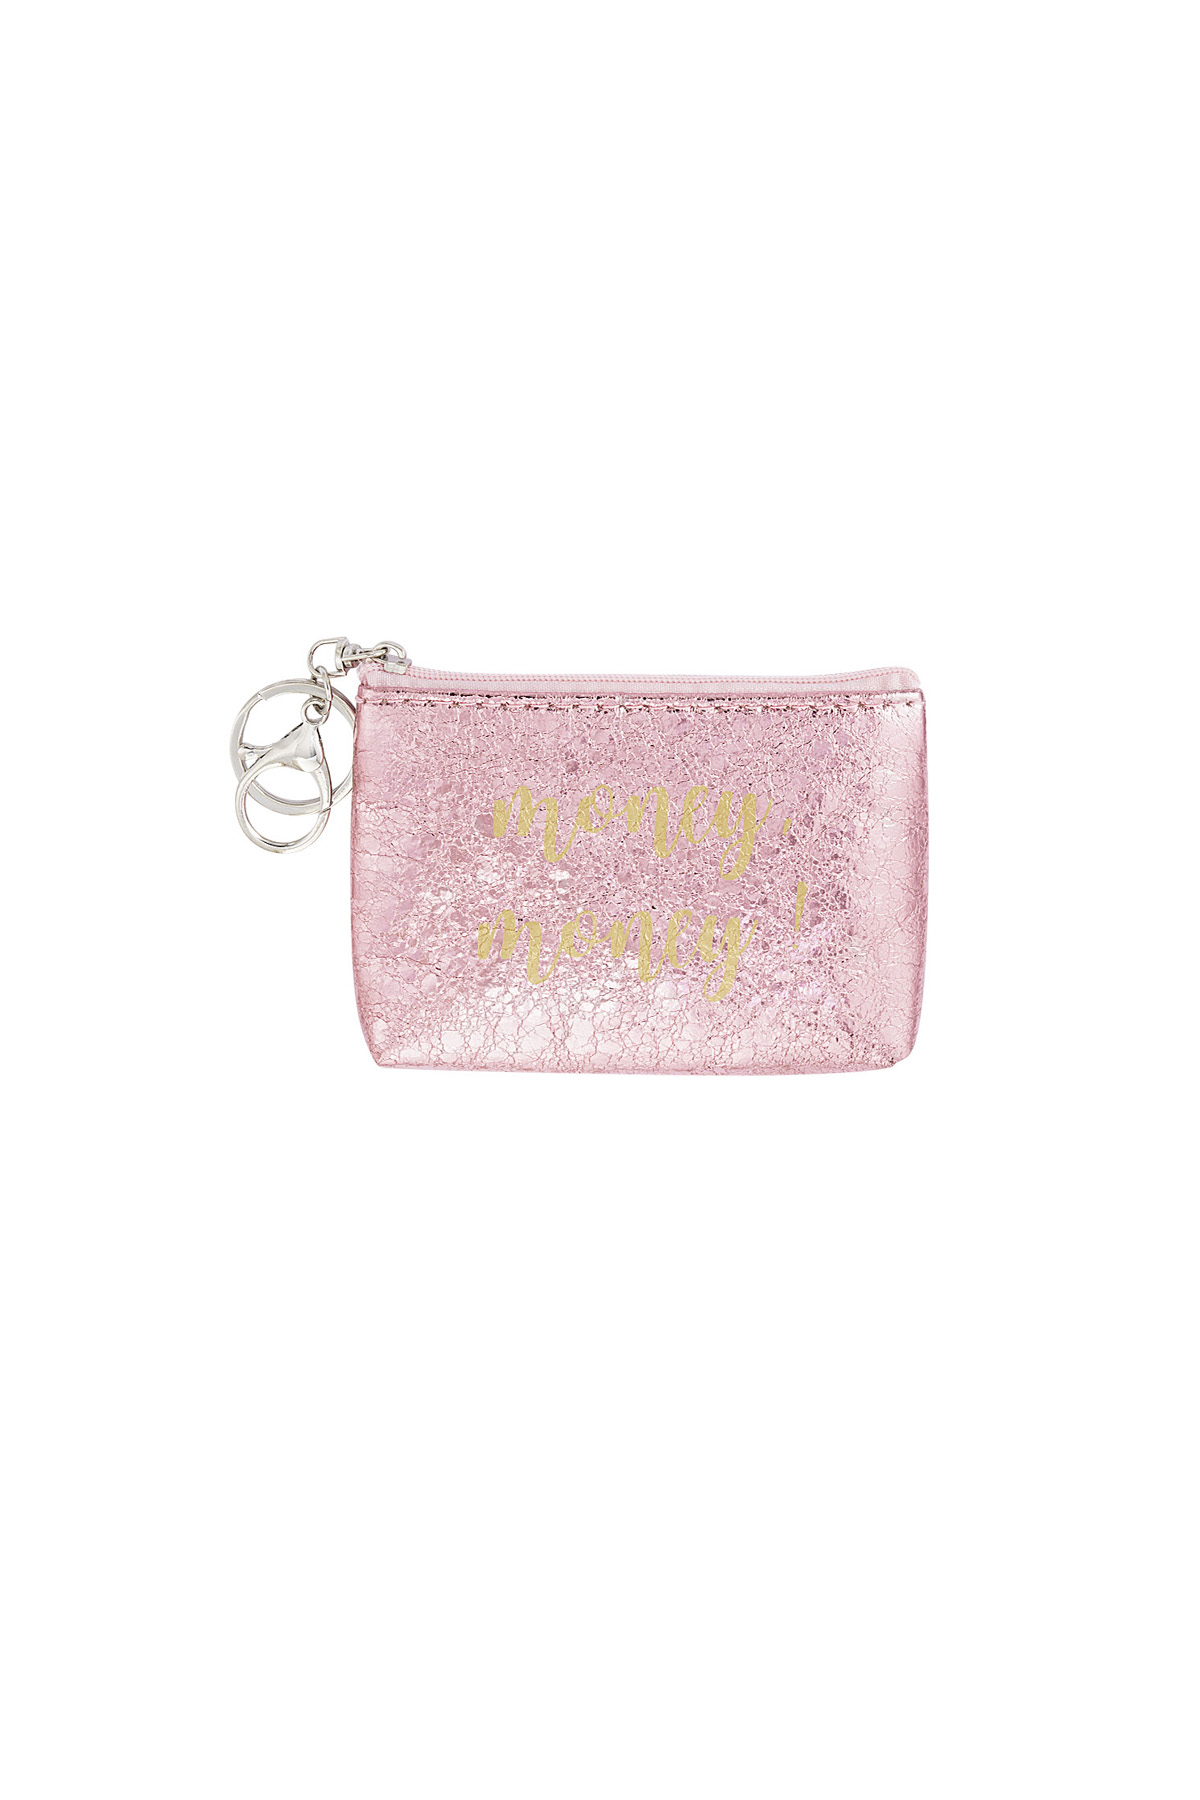 Keychain wallet metallic money money - pink